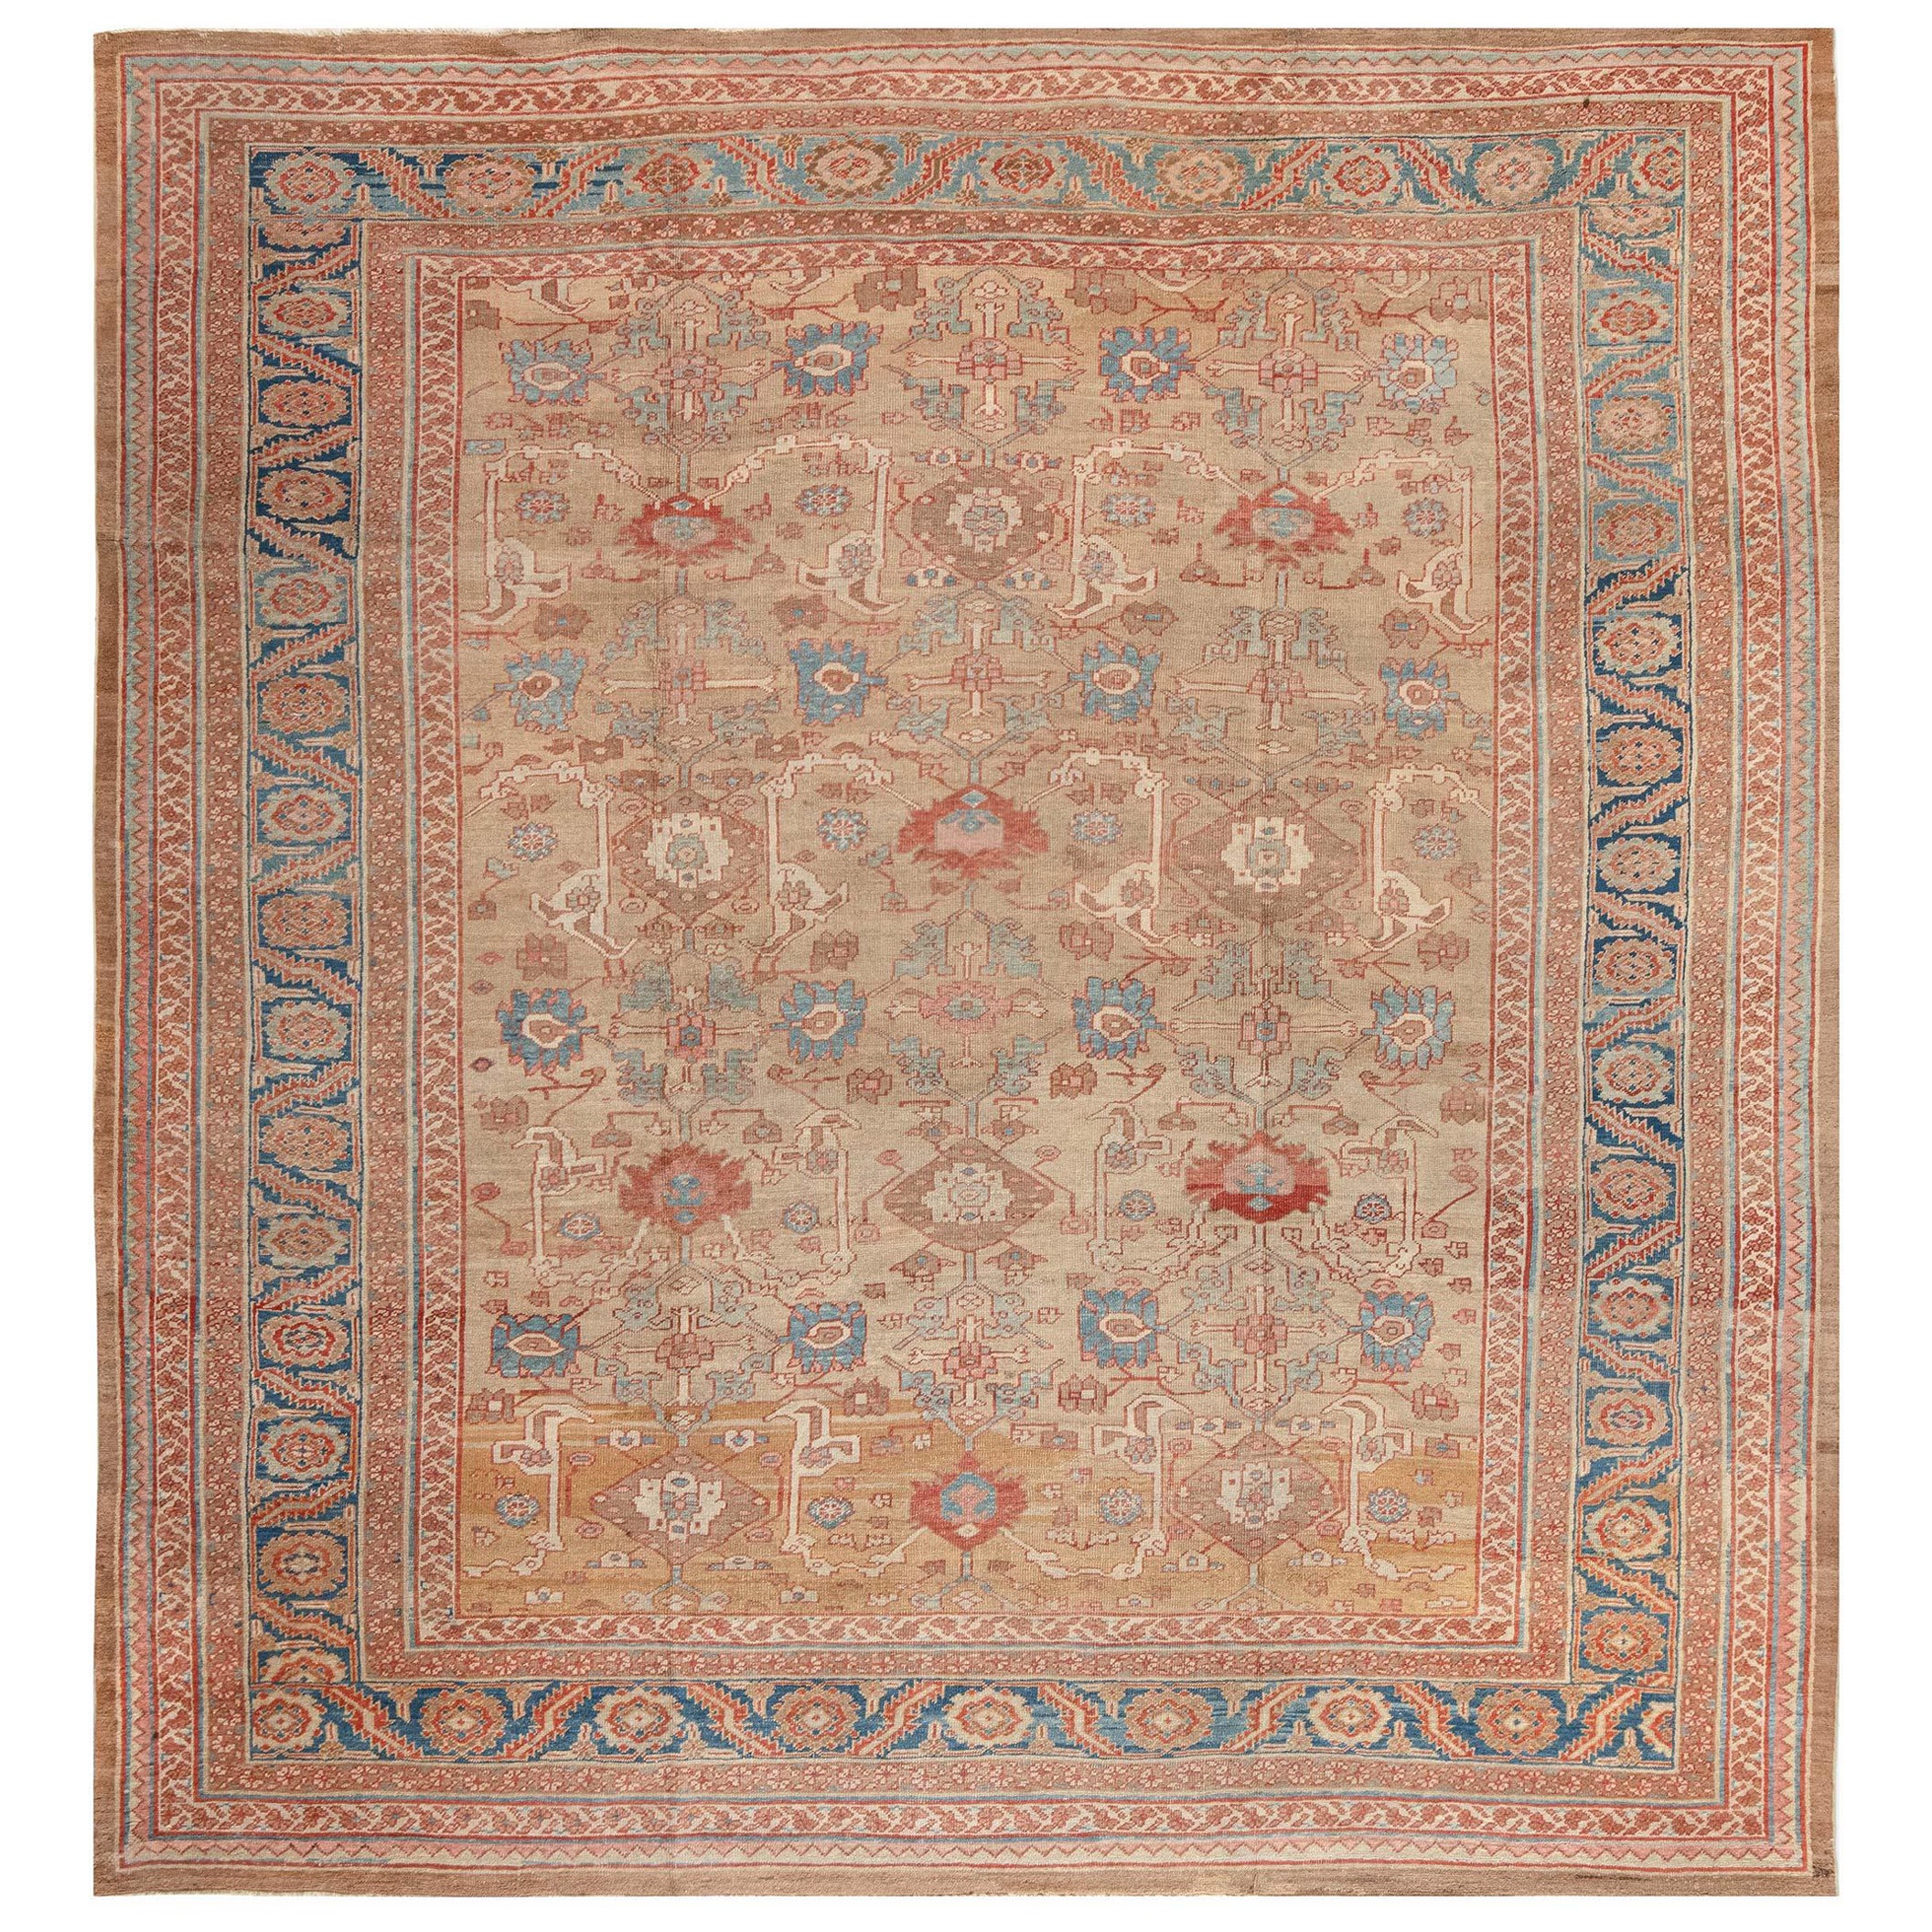 19th Century Persian Bakshaish 'Size Adjusted' rug